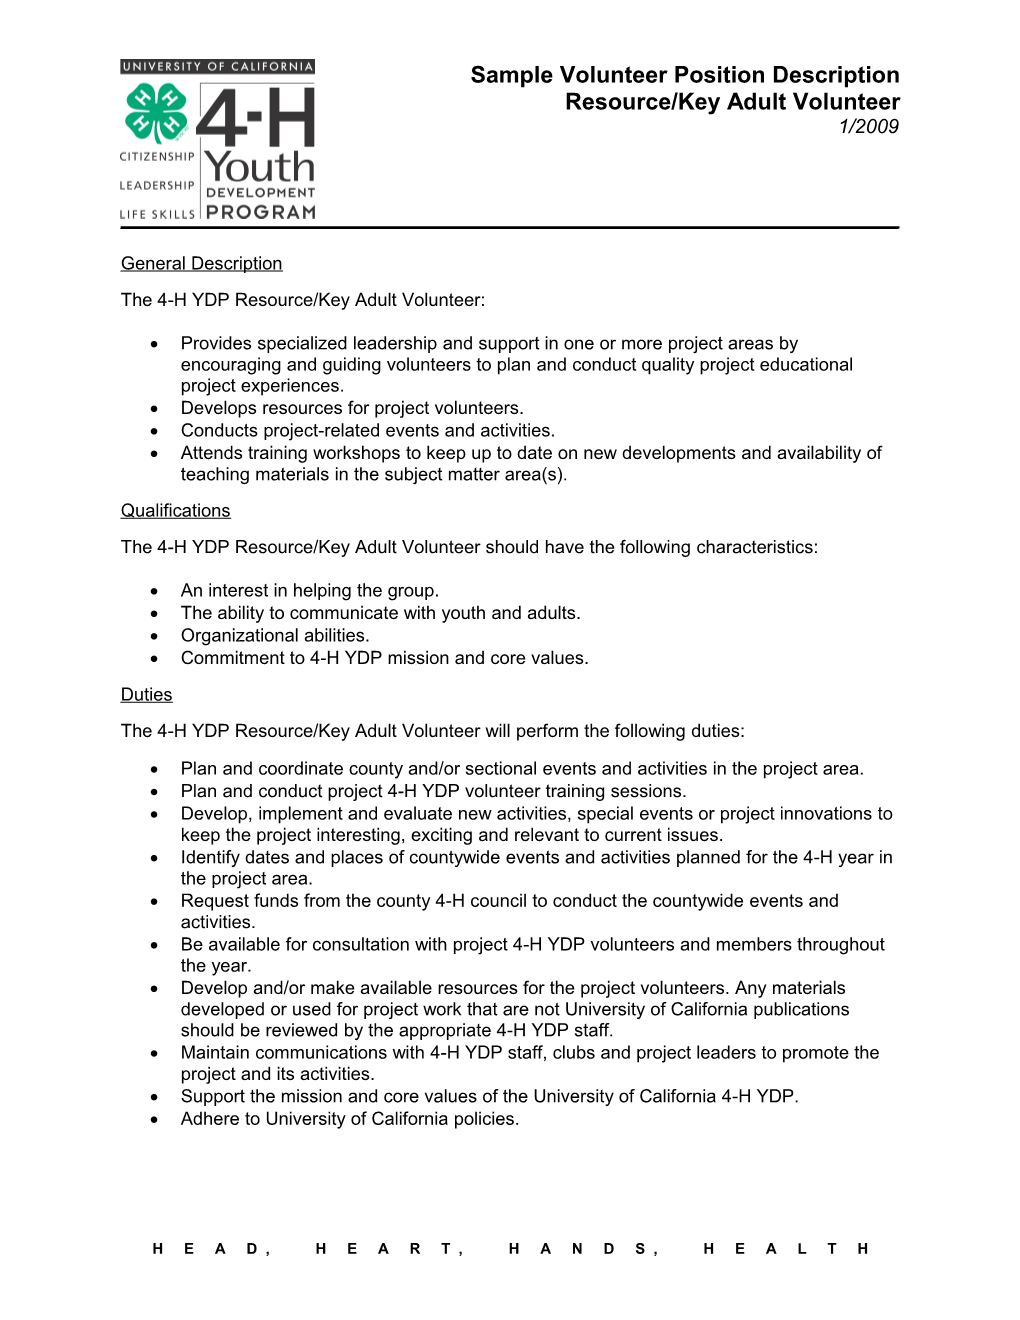 The 4H YDP Resource/Key Adult Volunteer